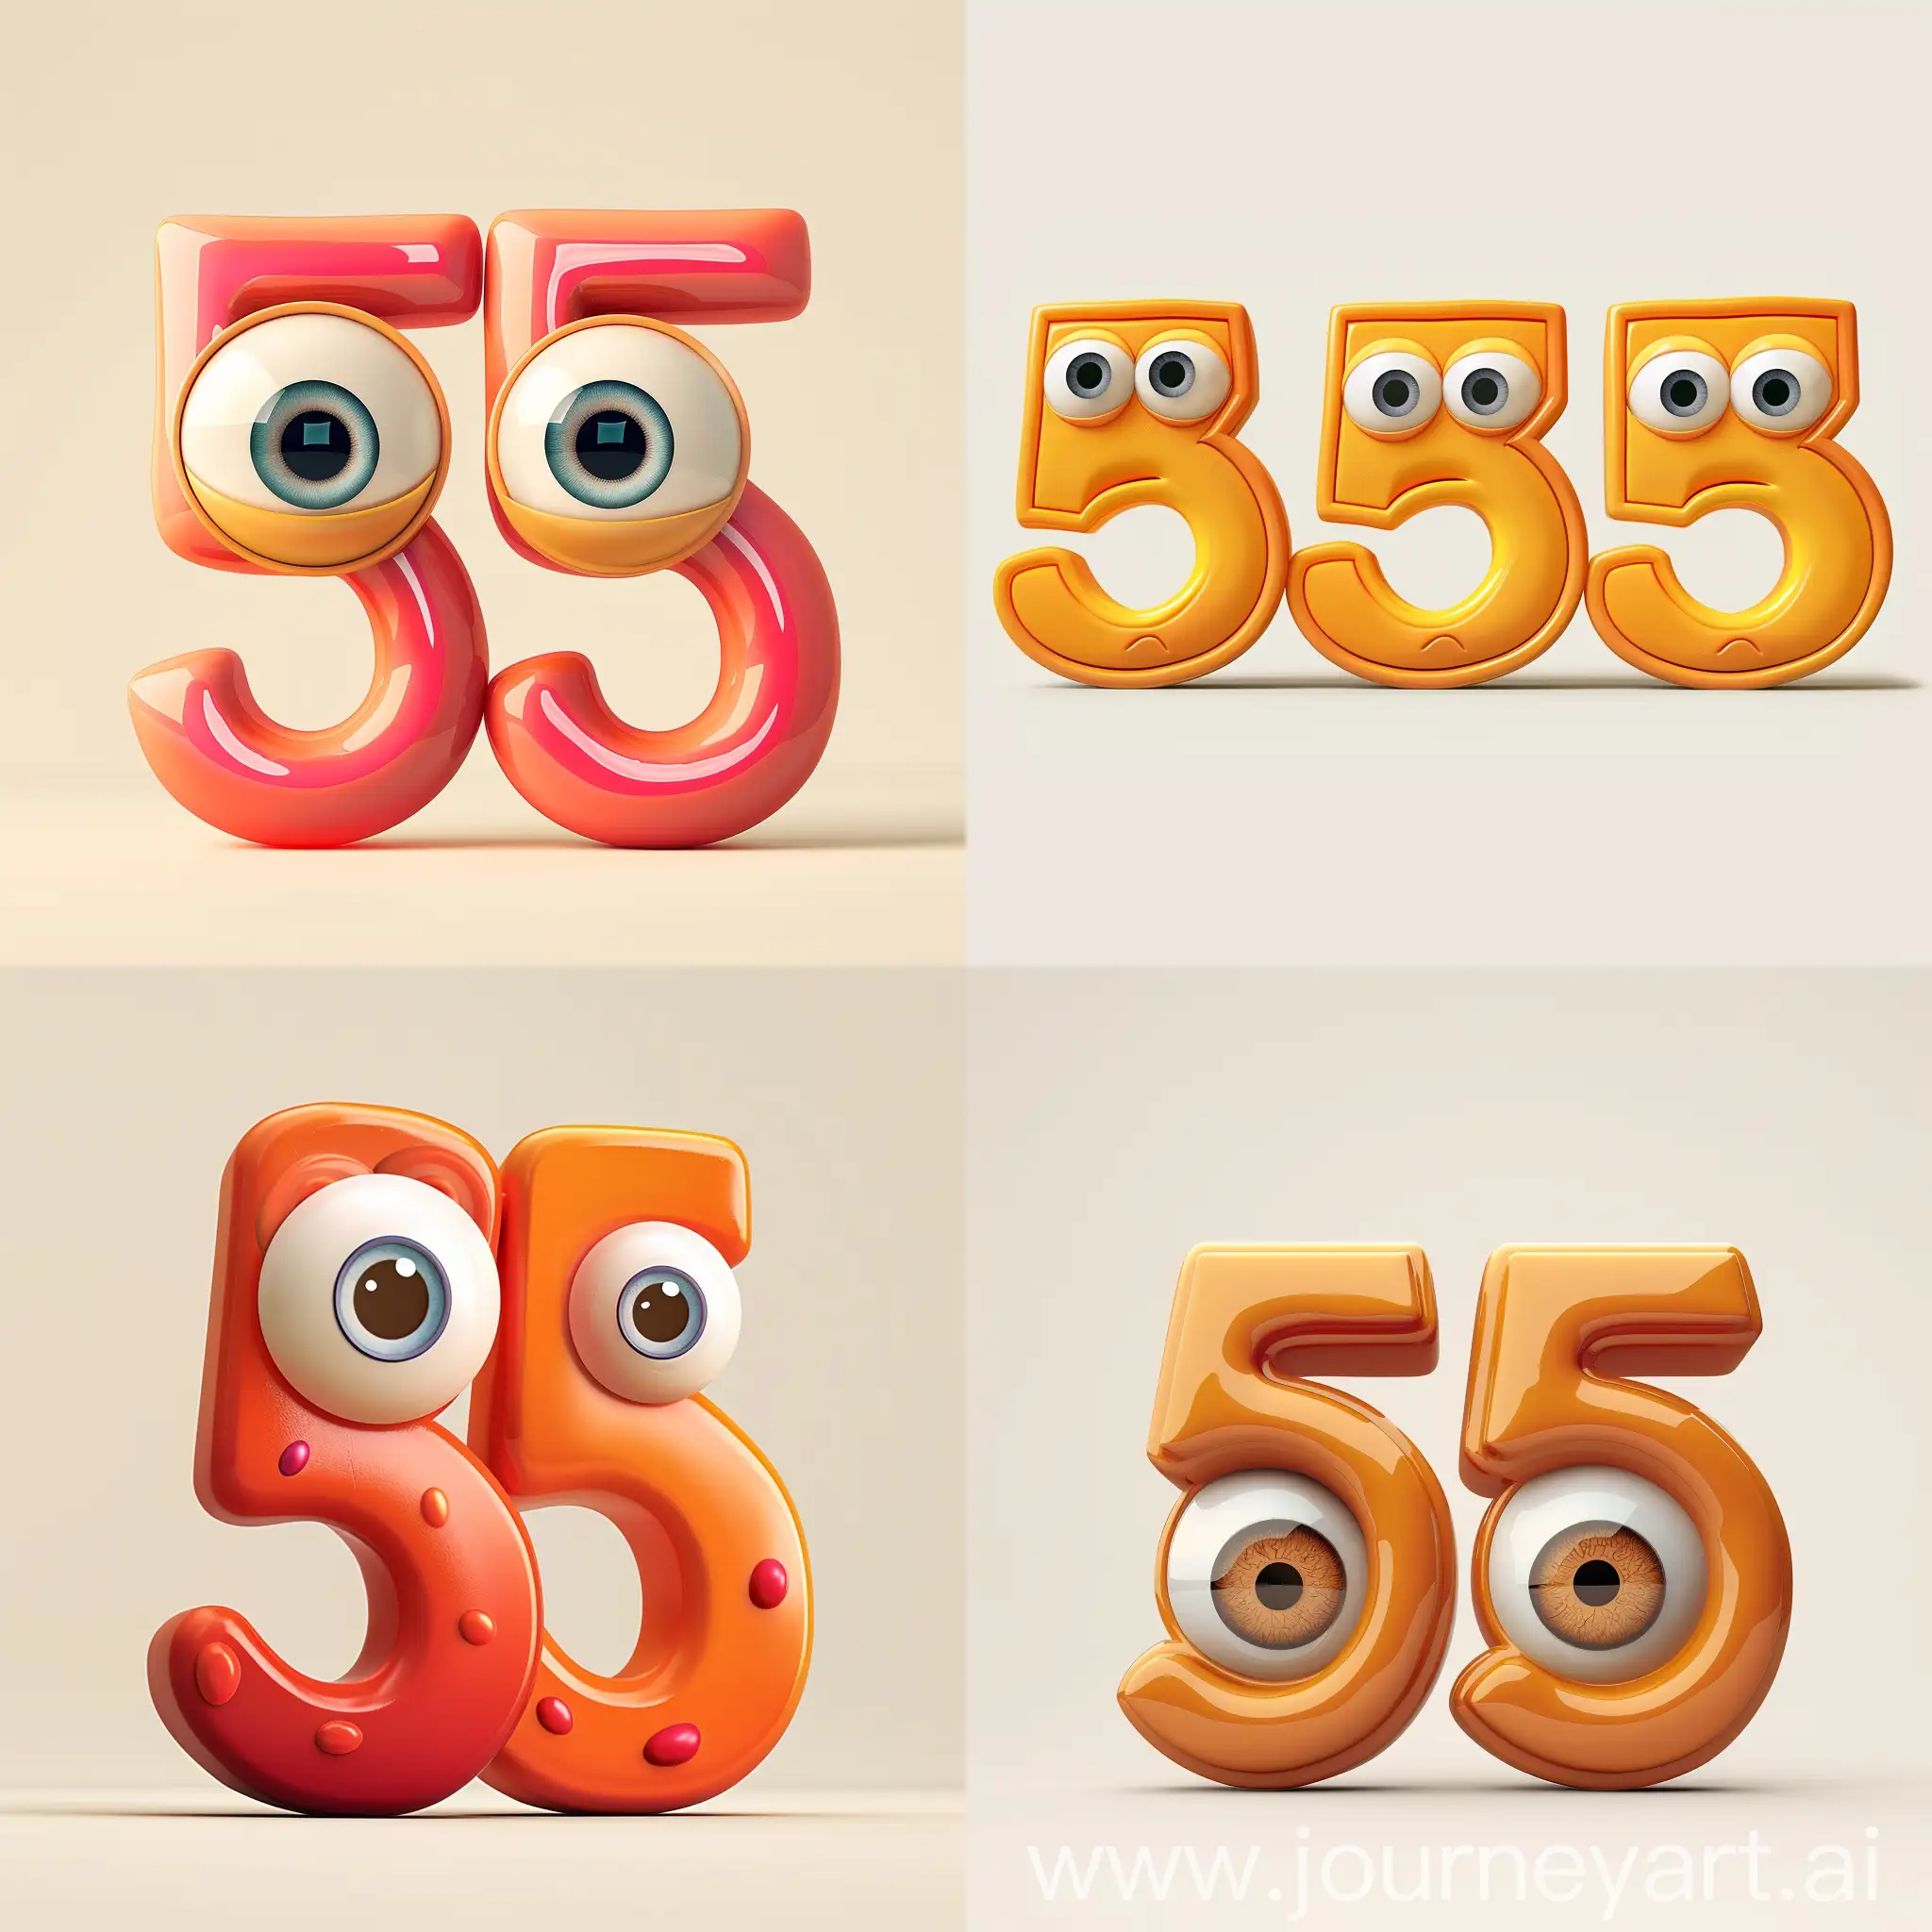 цифры пять пятёрка вид сбоку  большими глазами  симметричный анимация pixar на светлом фоне